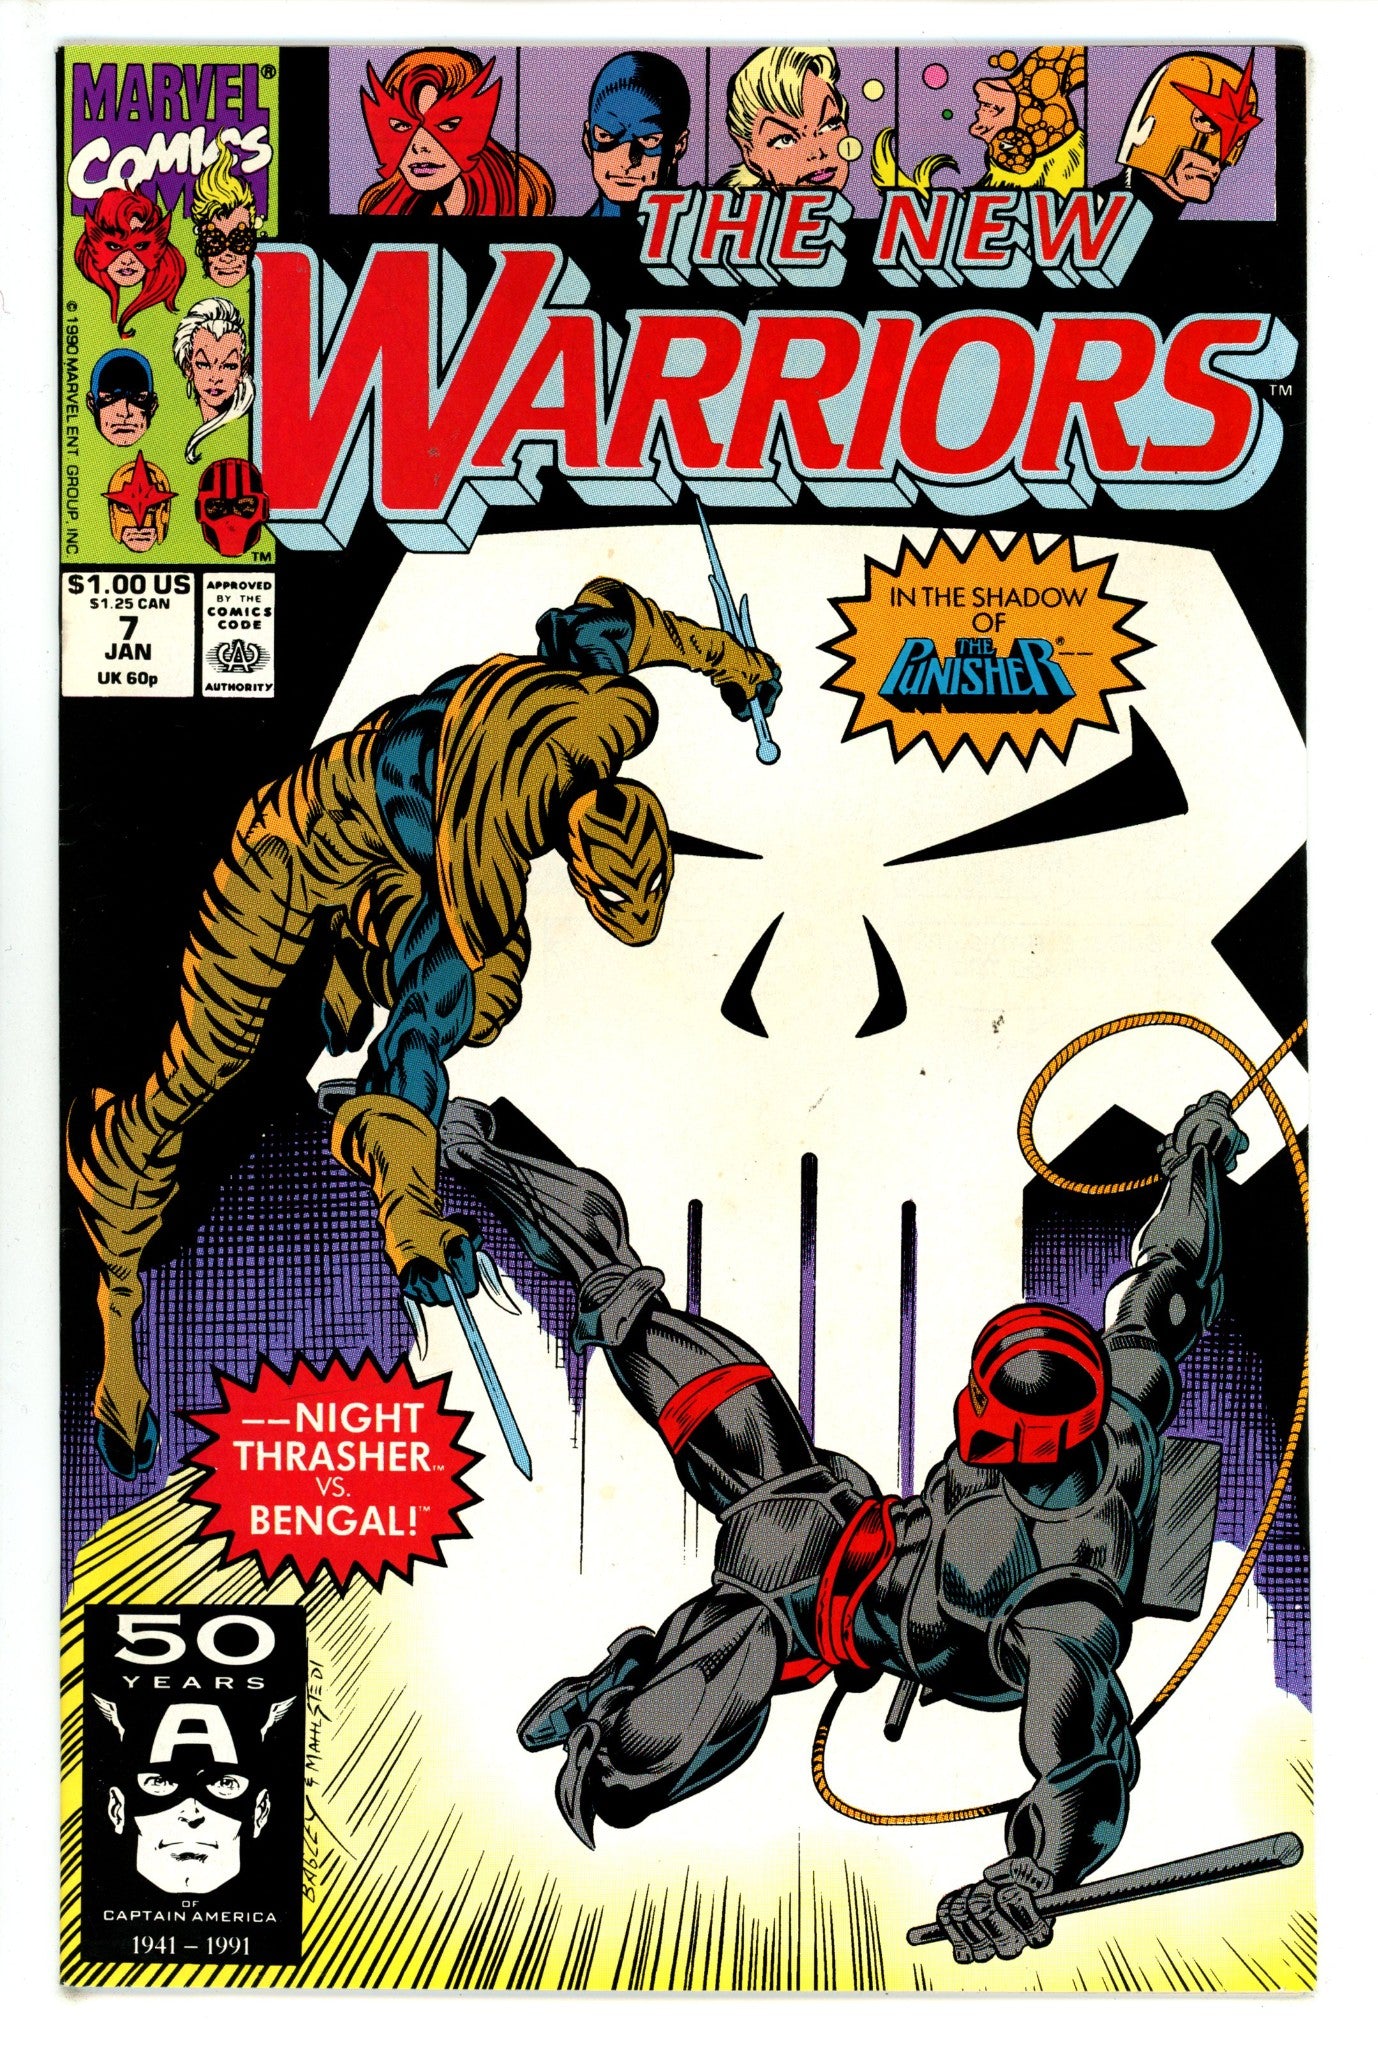 The New Warriors Vol 1 7 (1990)